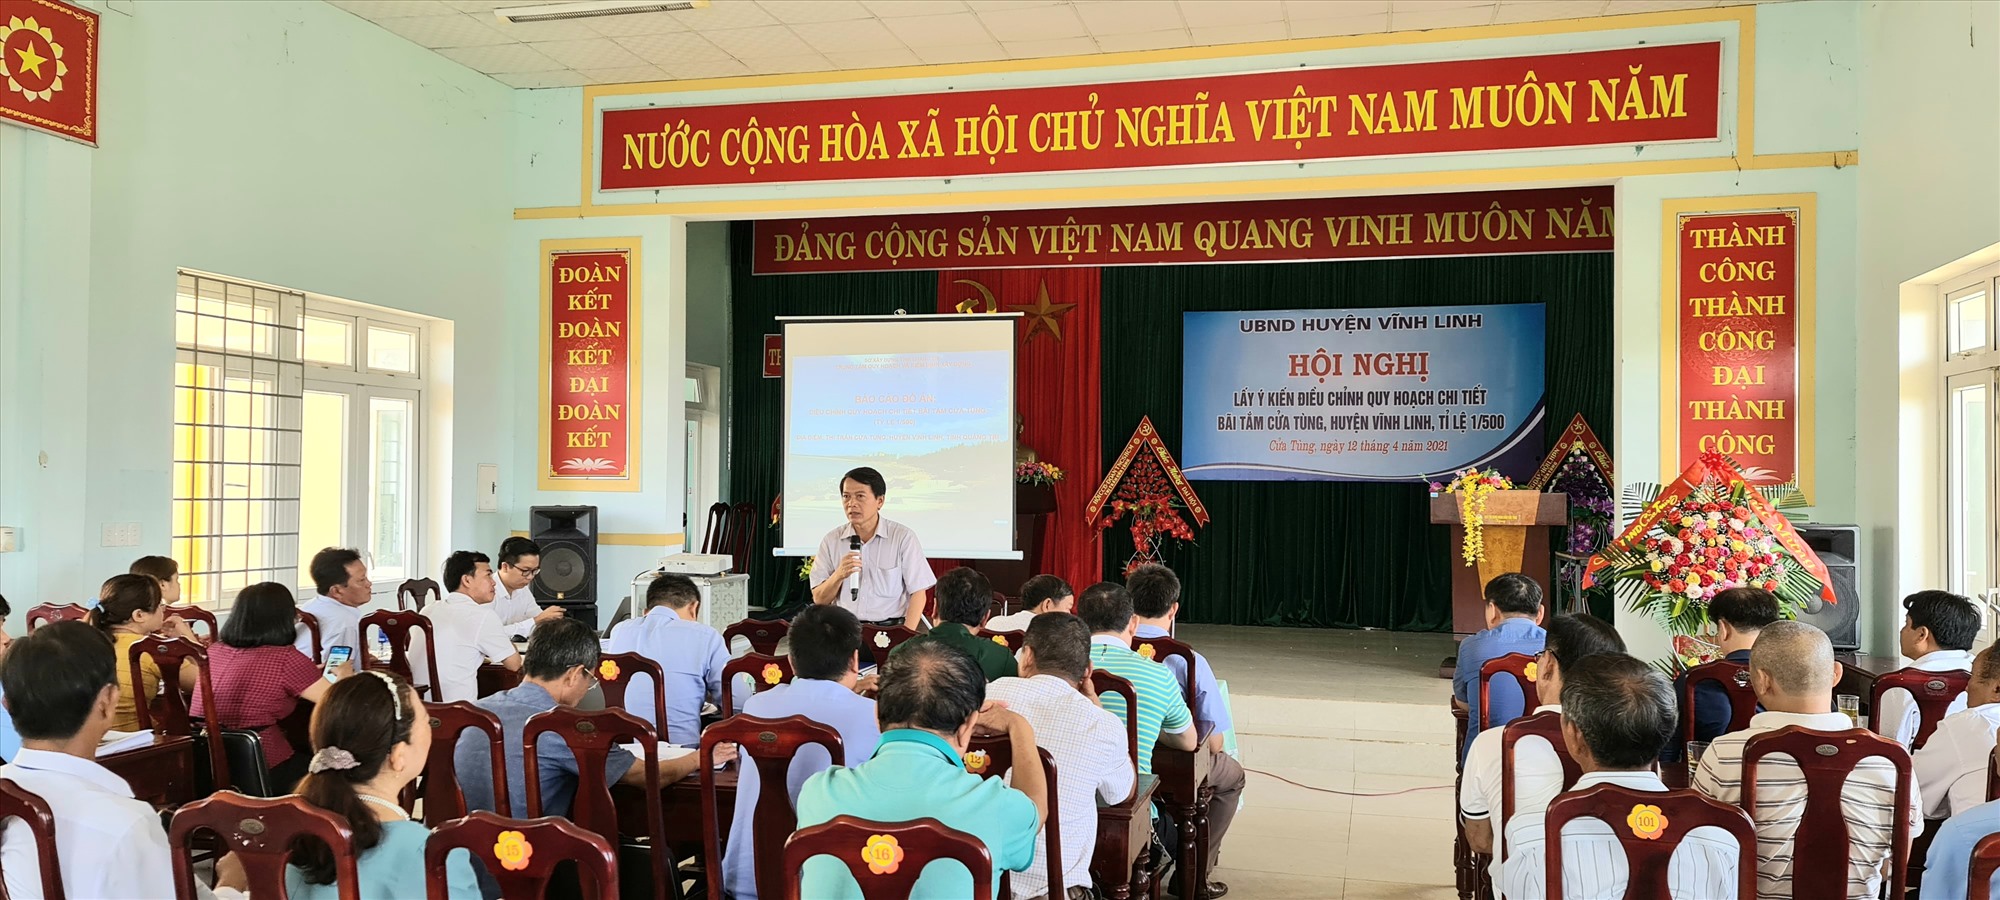 Lãnh đạo huyện Vĩnh Linh tiếp thu ý kiến của các hộ kinh doanh dịch vụ tại Bãi tắm Cửa Tùng- Ảnh: Nguyên Đồng